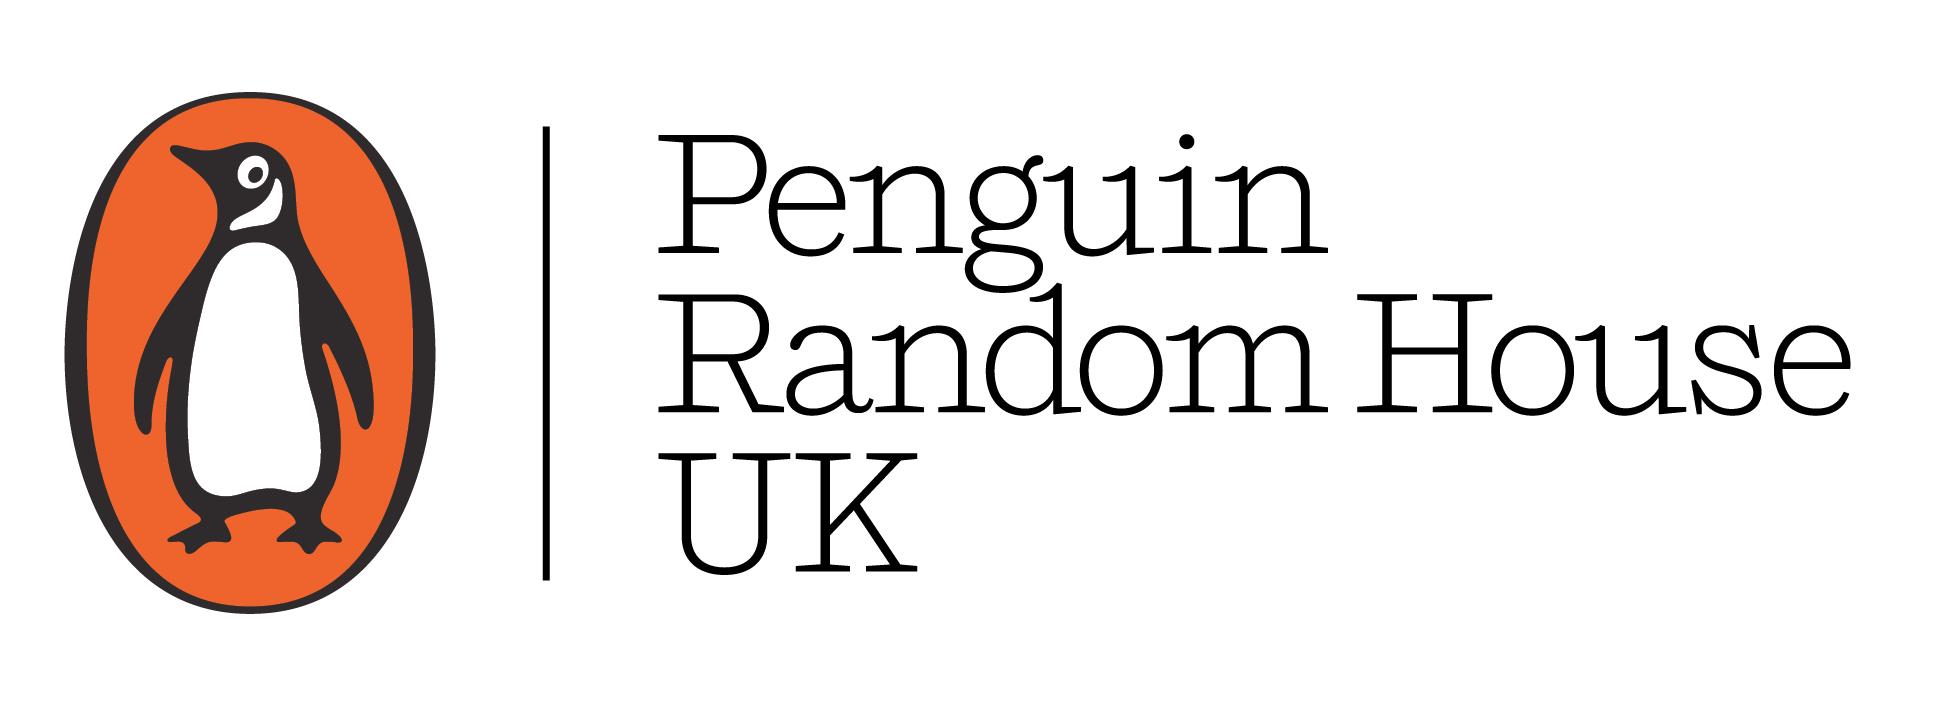 Penguin Random House offer